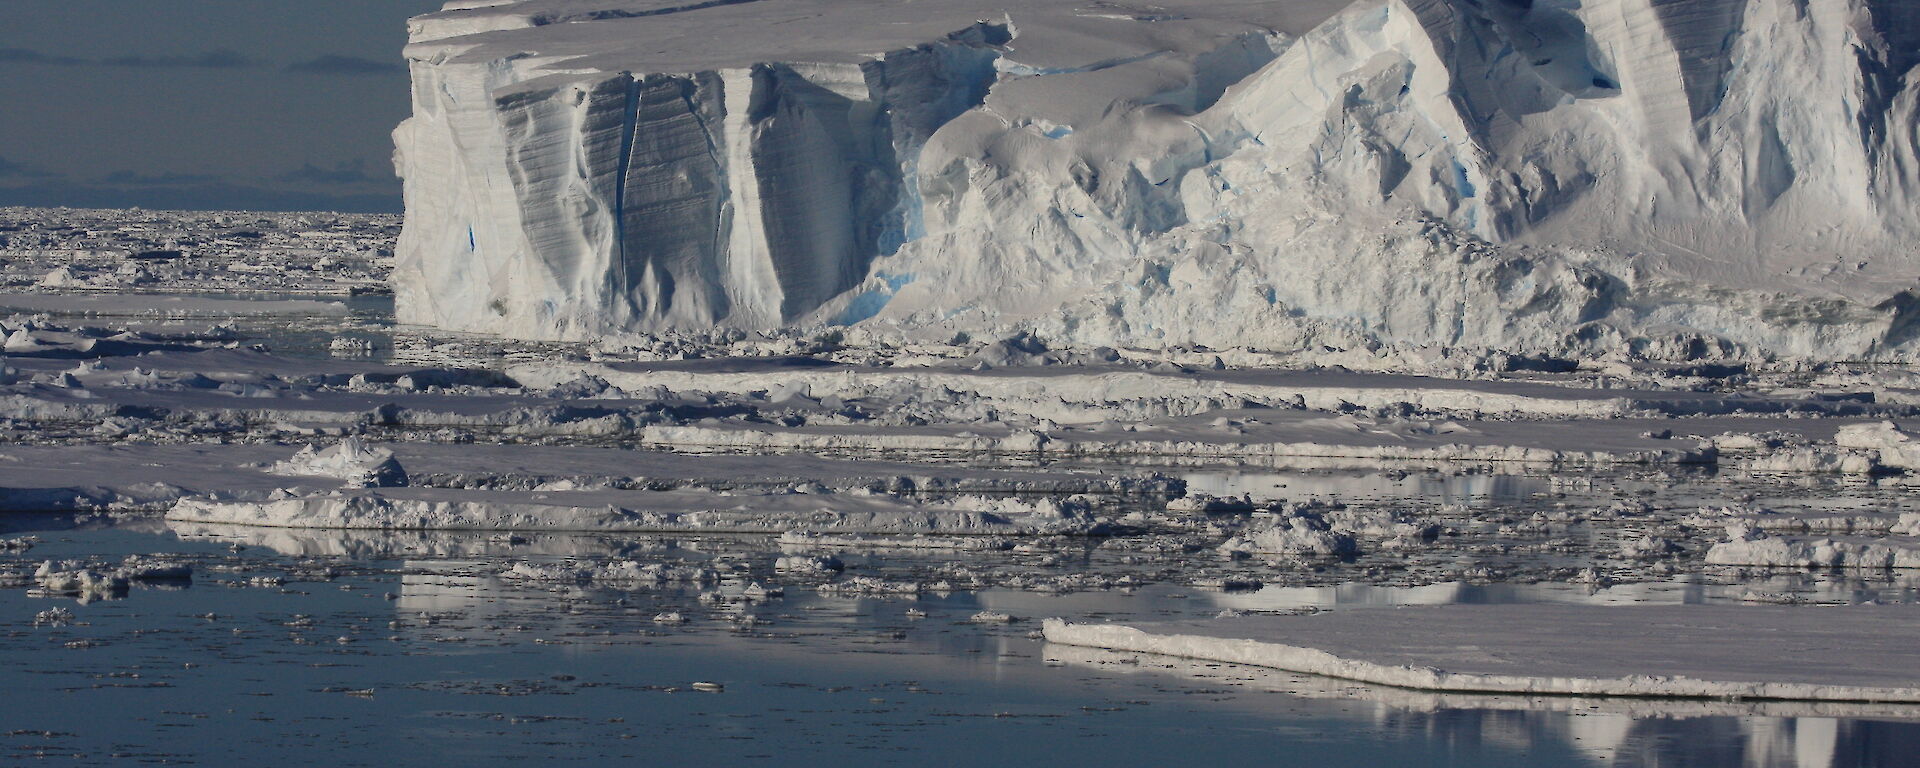 Front of the Totten Glacier in East Antarctica.